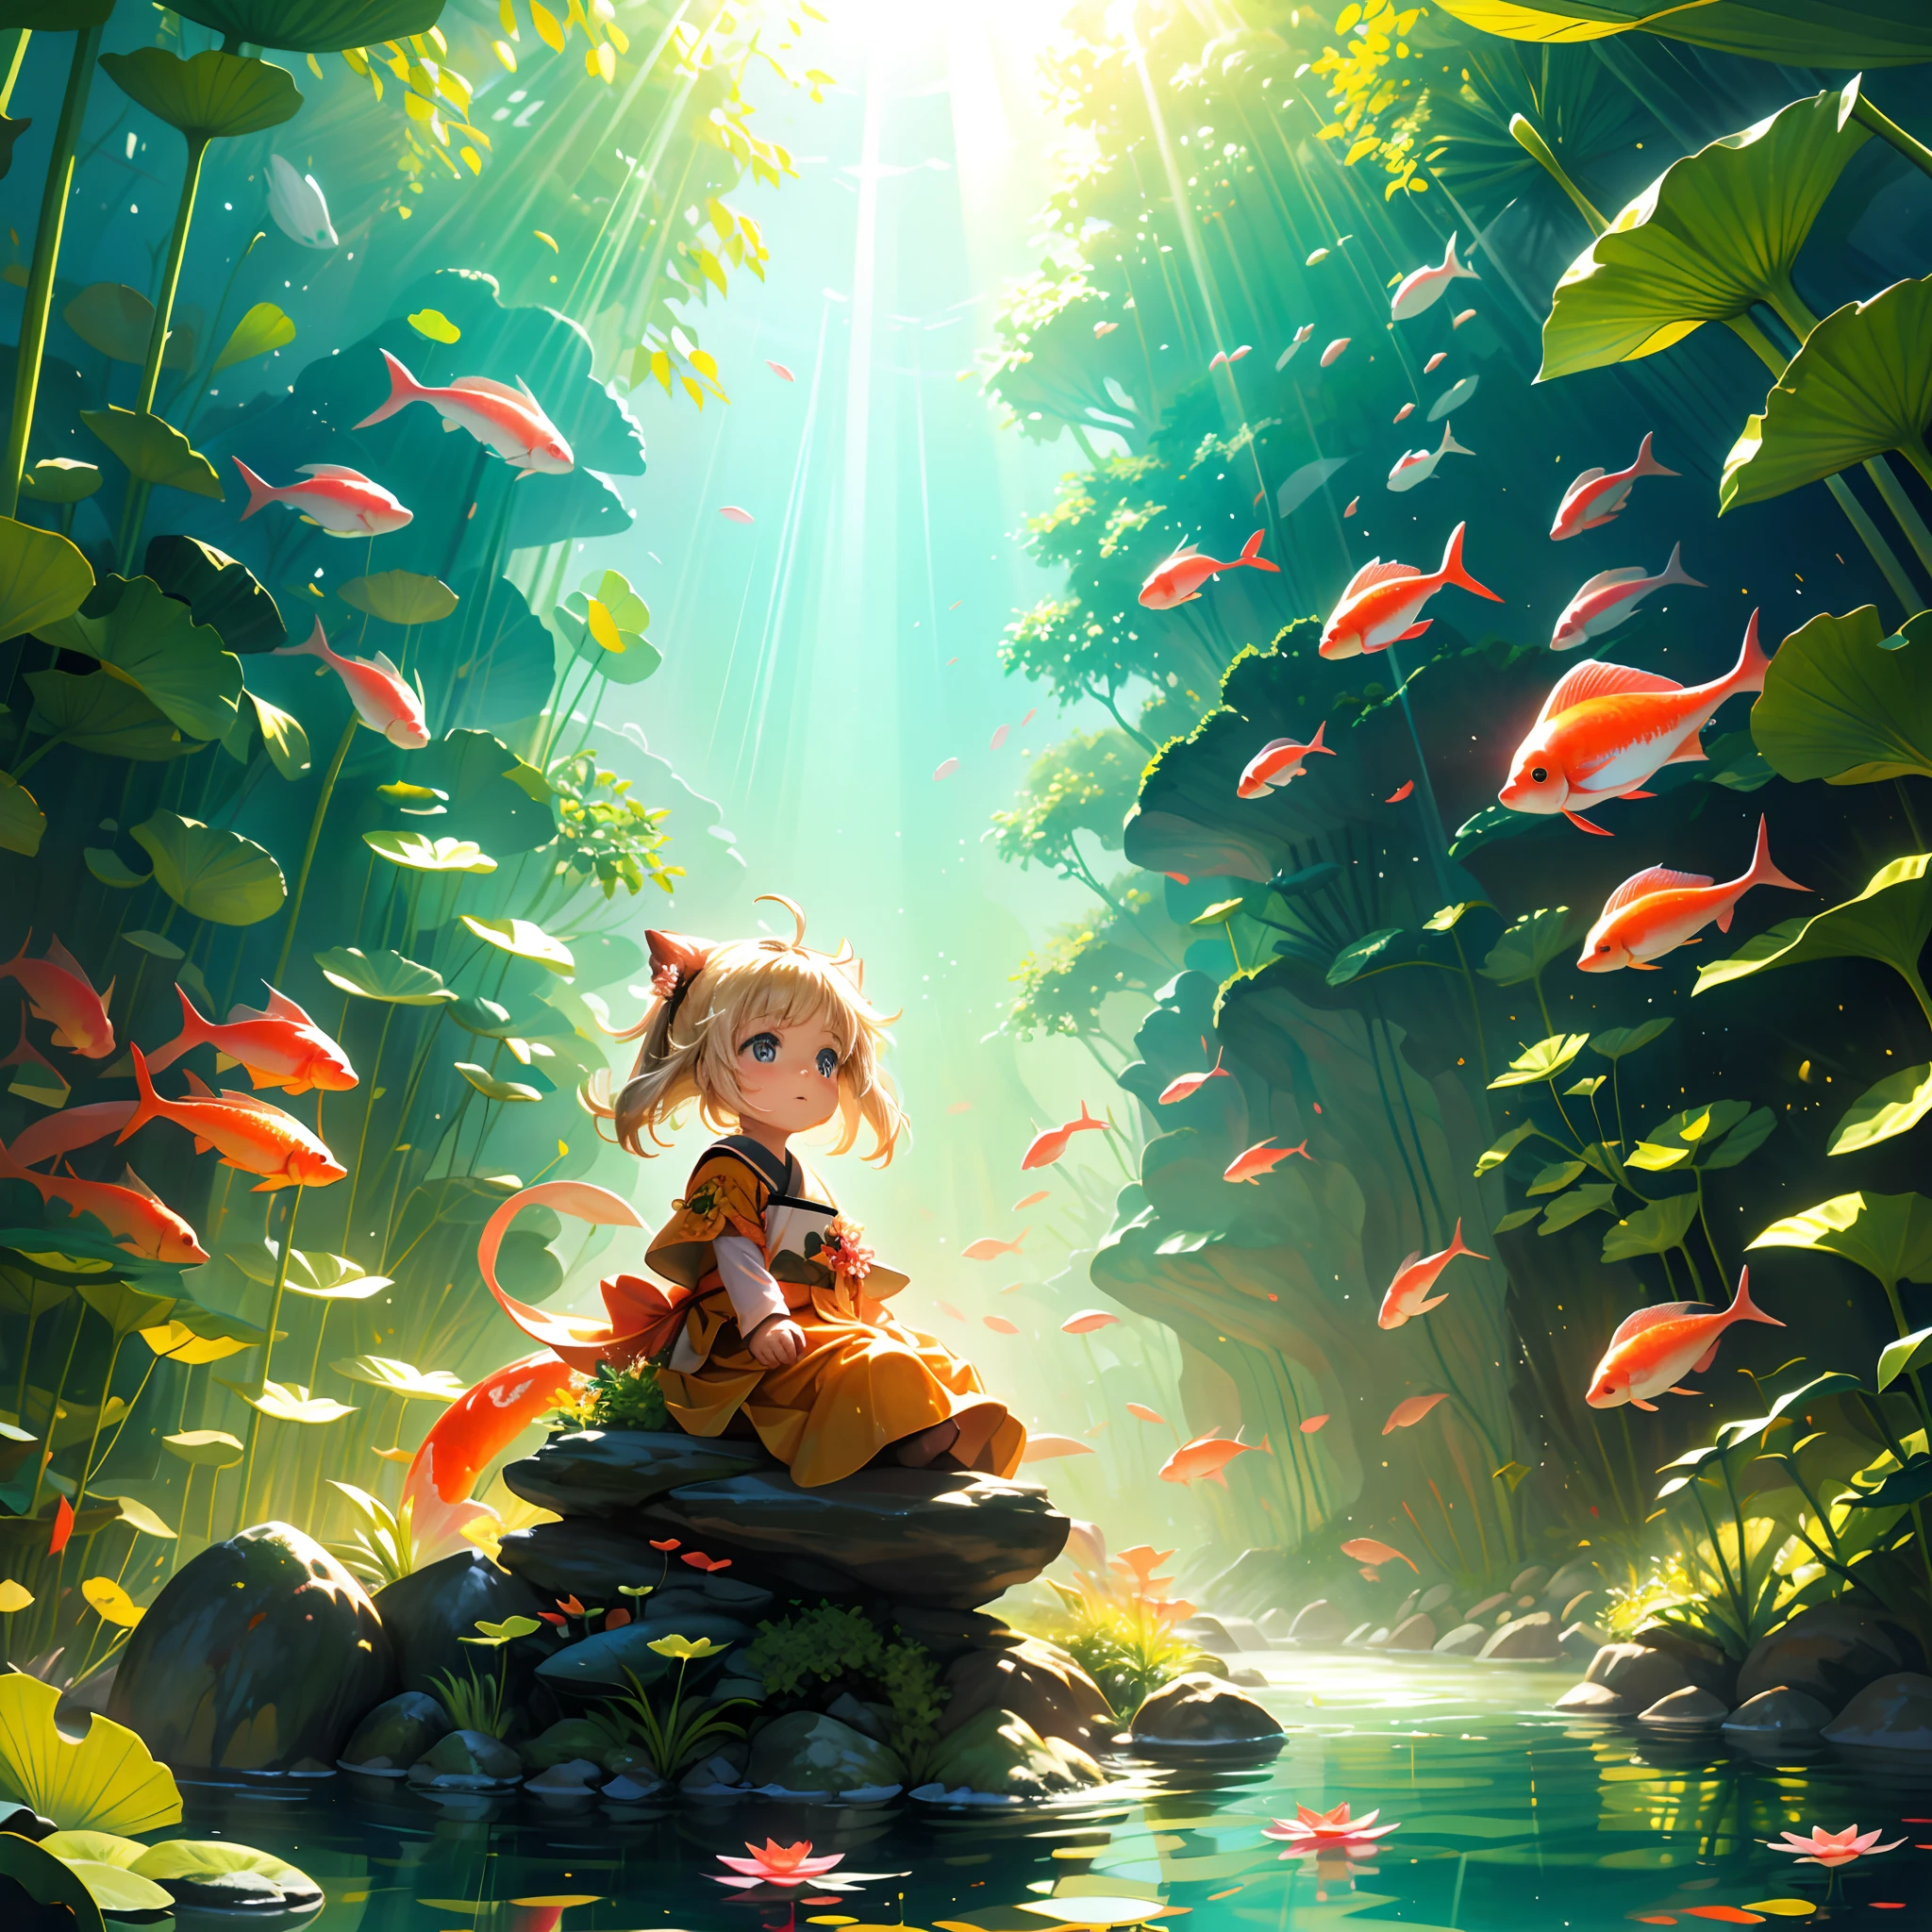 Una mañana soleada，el sol que brilla，una niña pequeña y encantadora，Montar un koi gigante，Juega en un estanque cubierto de flores de loto